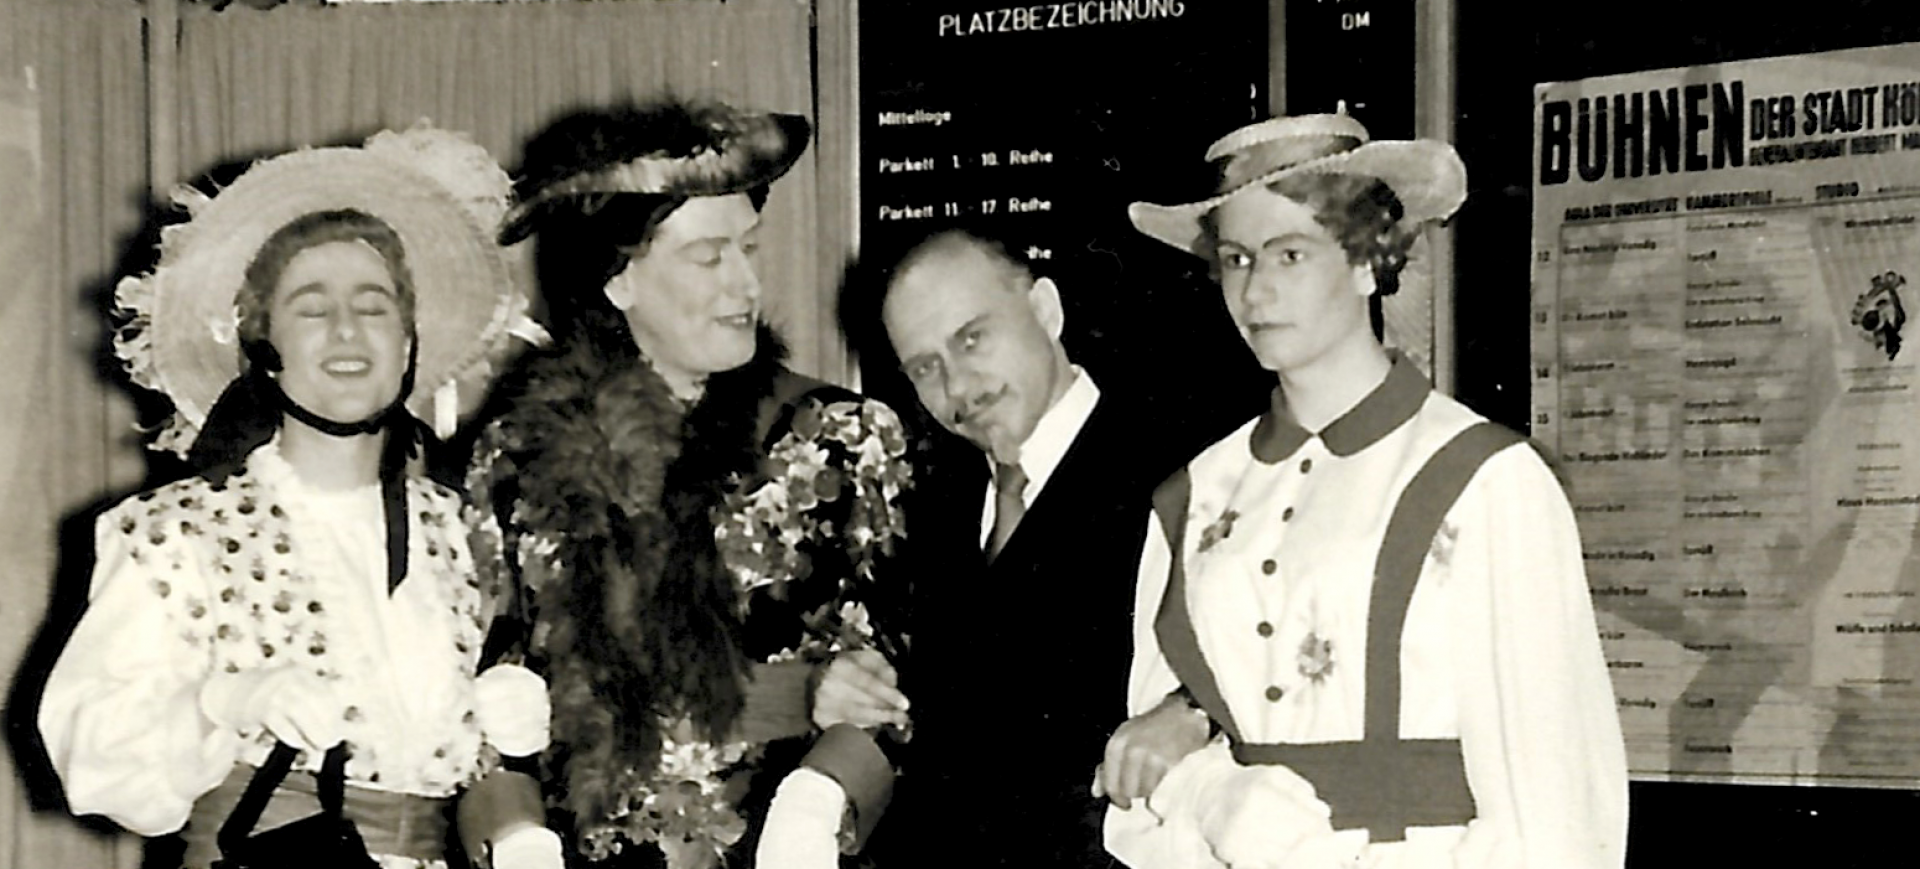 Dr Komet kütt - Divertissementchen 1955 - Darsteller posieren in historischen Kostümen